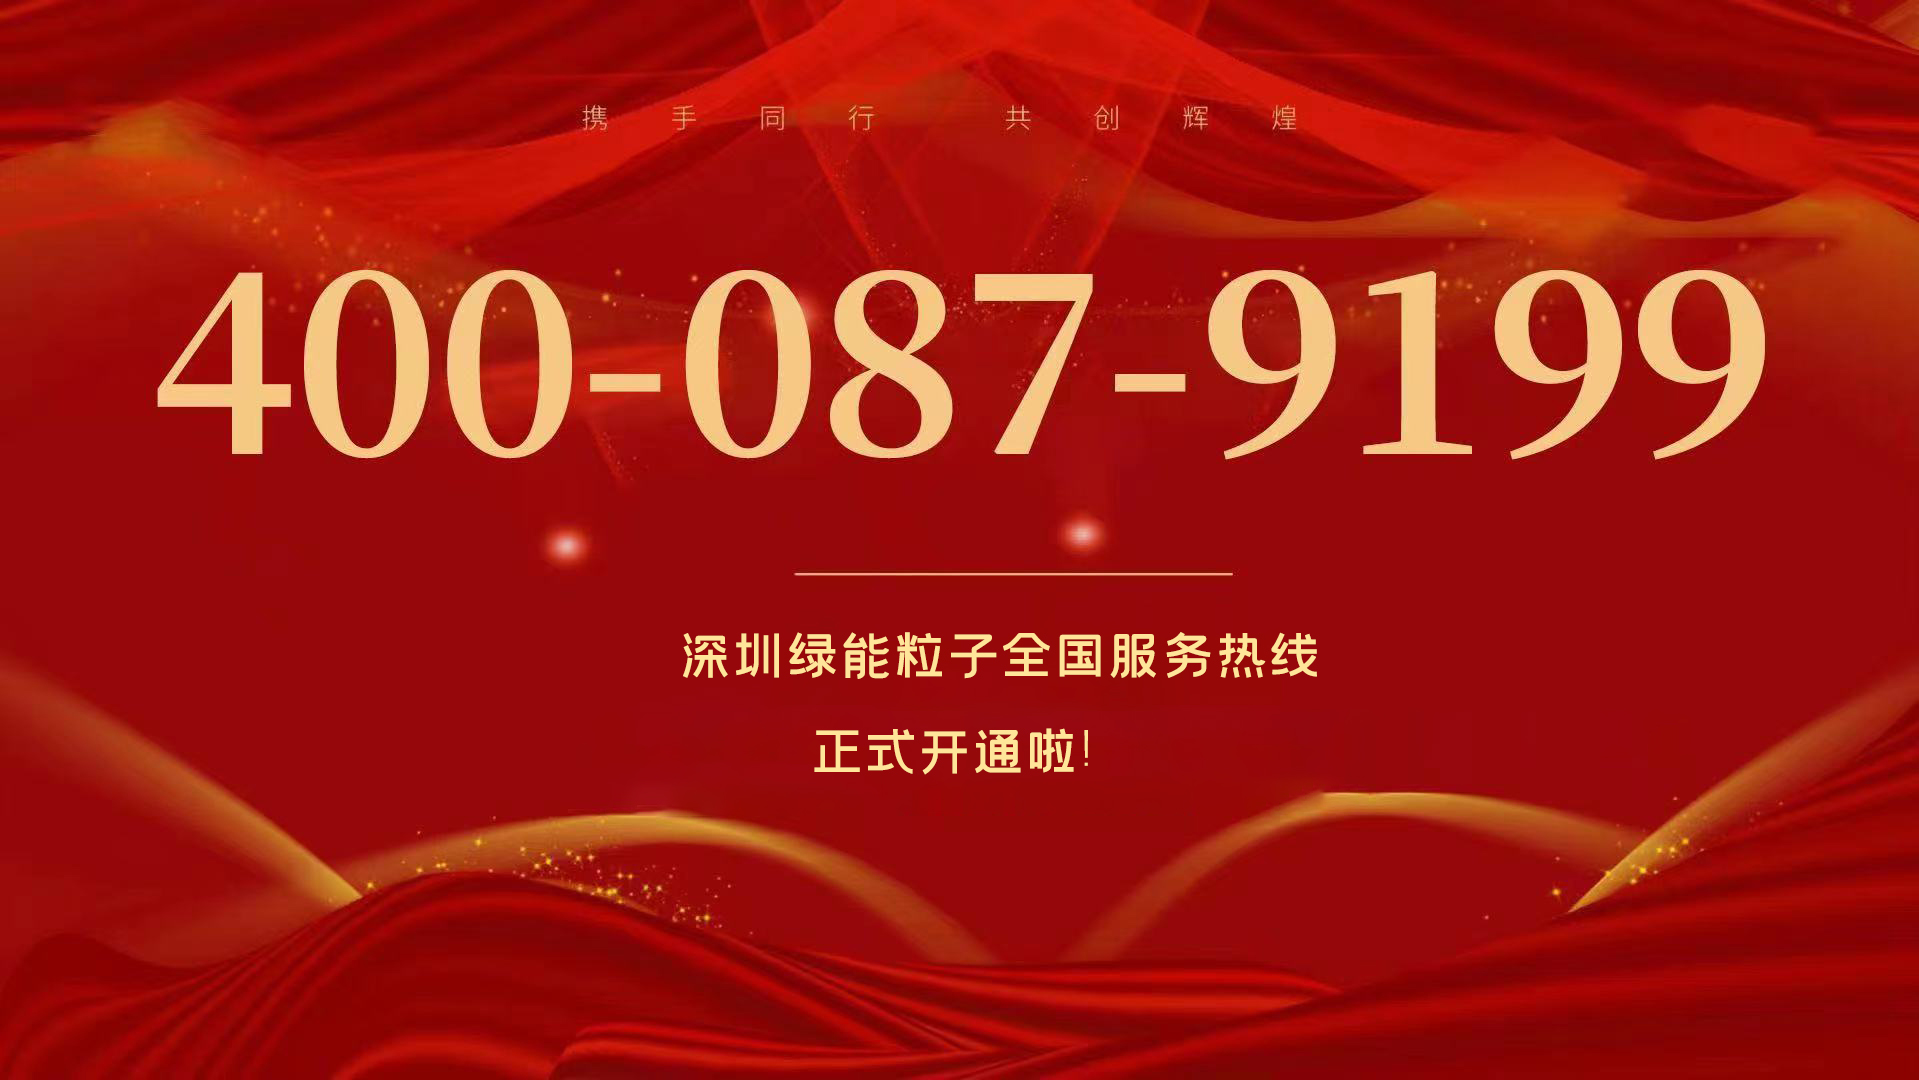  深圳绿能粒子全国服务热线400-087-9199正式开通啦！  